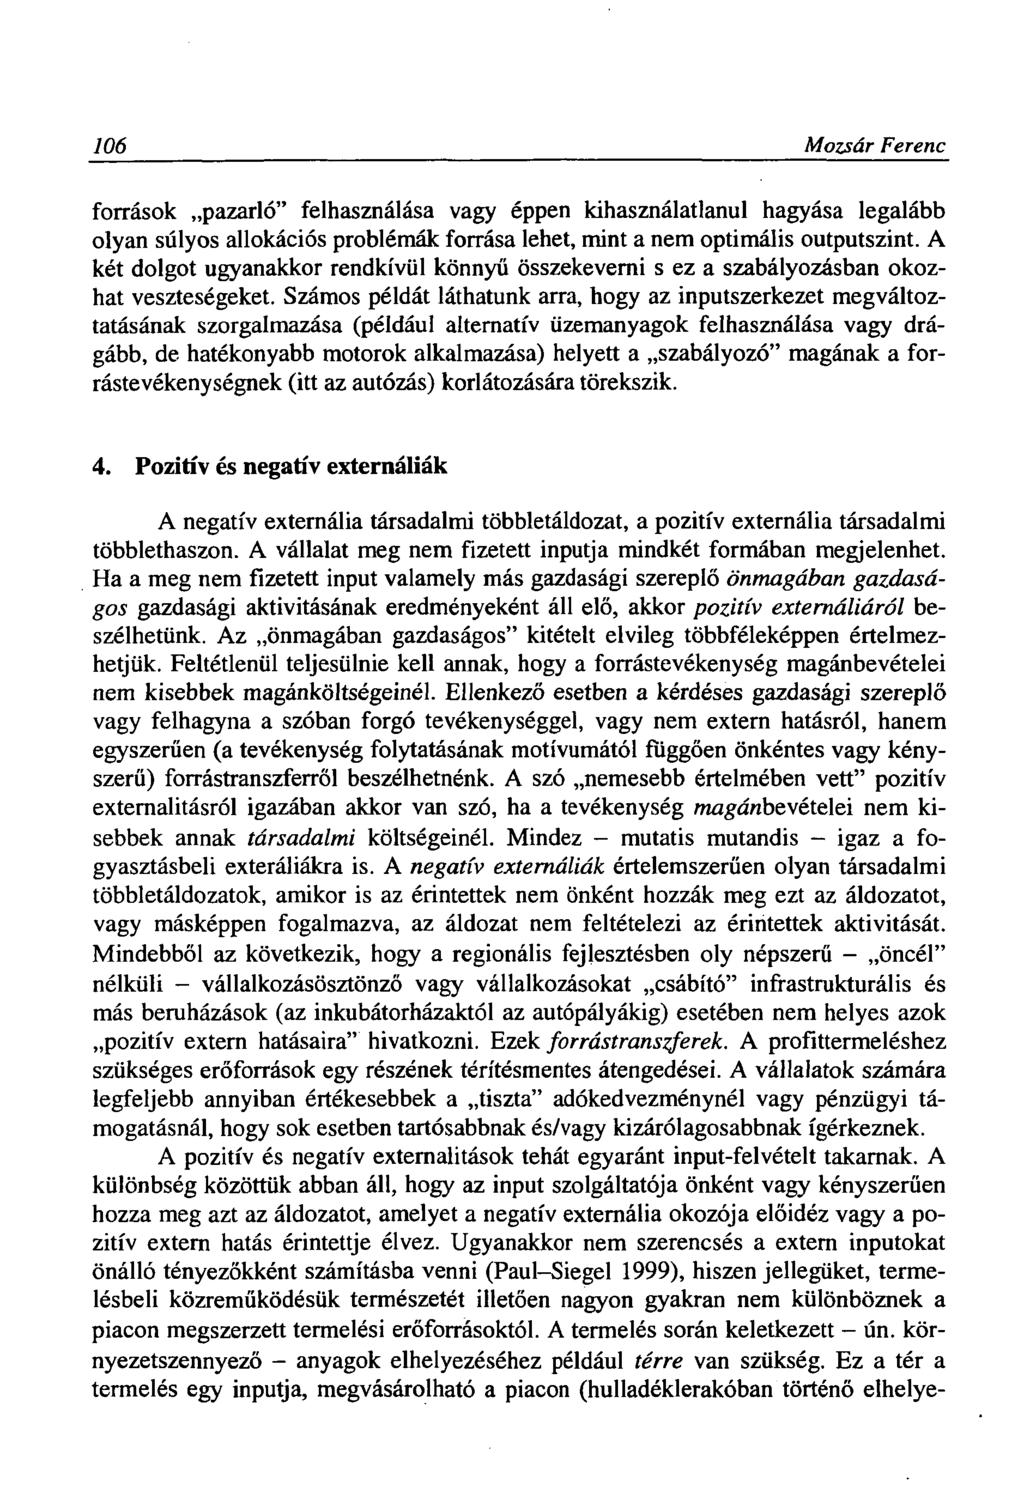 106 Mozsár Ferenc források pazarló" felhasználása vagy éppen kihasználatlanul hagyása legalább olyan súlyos allokációs problémák forrása lehet, mint a nem optimális outputszint.